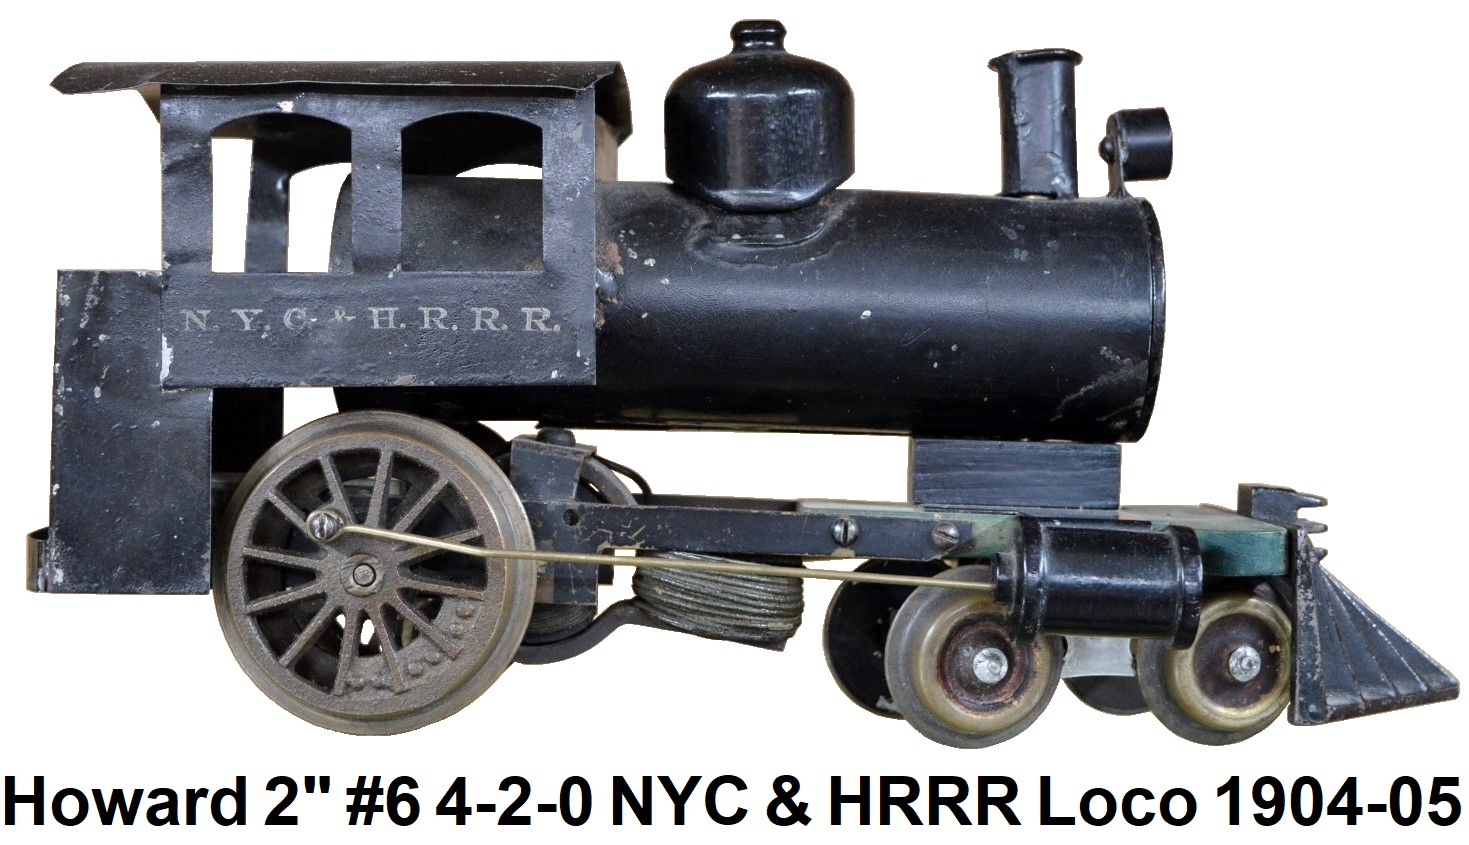 Howard early #6 4-2-0 Steam outline locomotive in 2 inch gauge N.Y.C. & H.R.R.R. 1904 to 1905